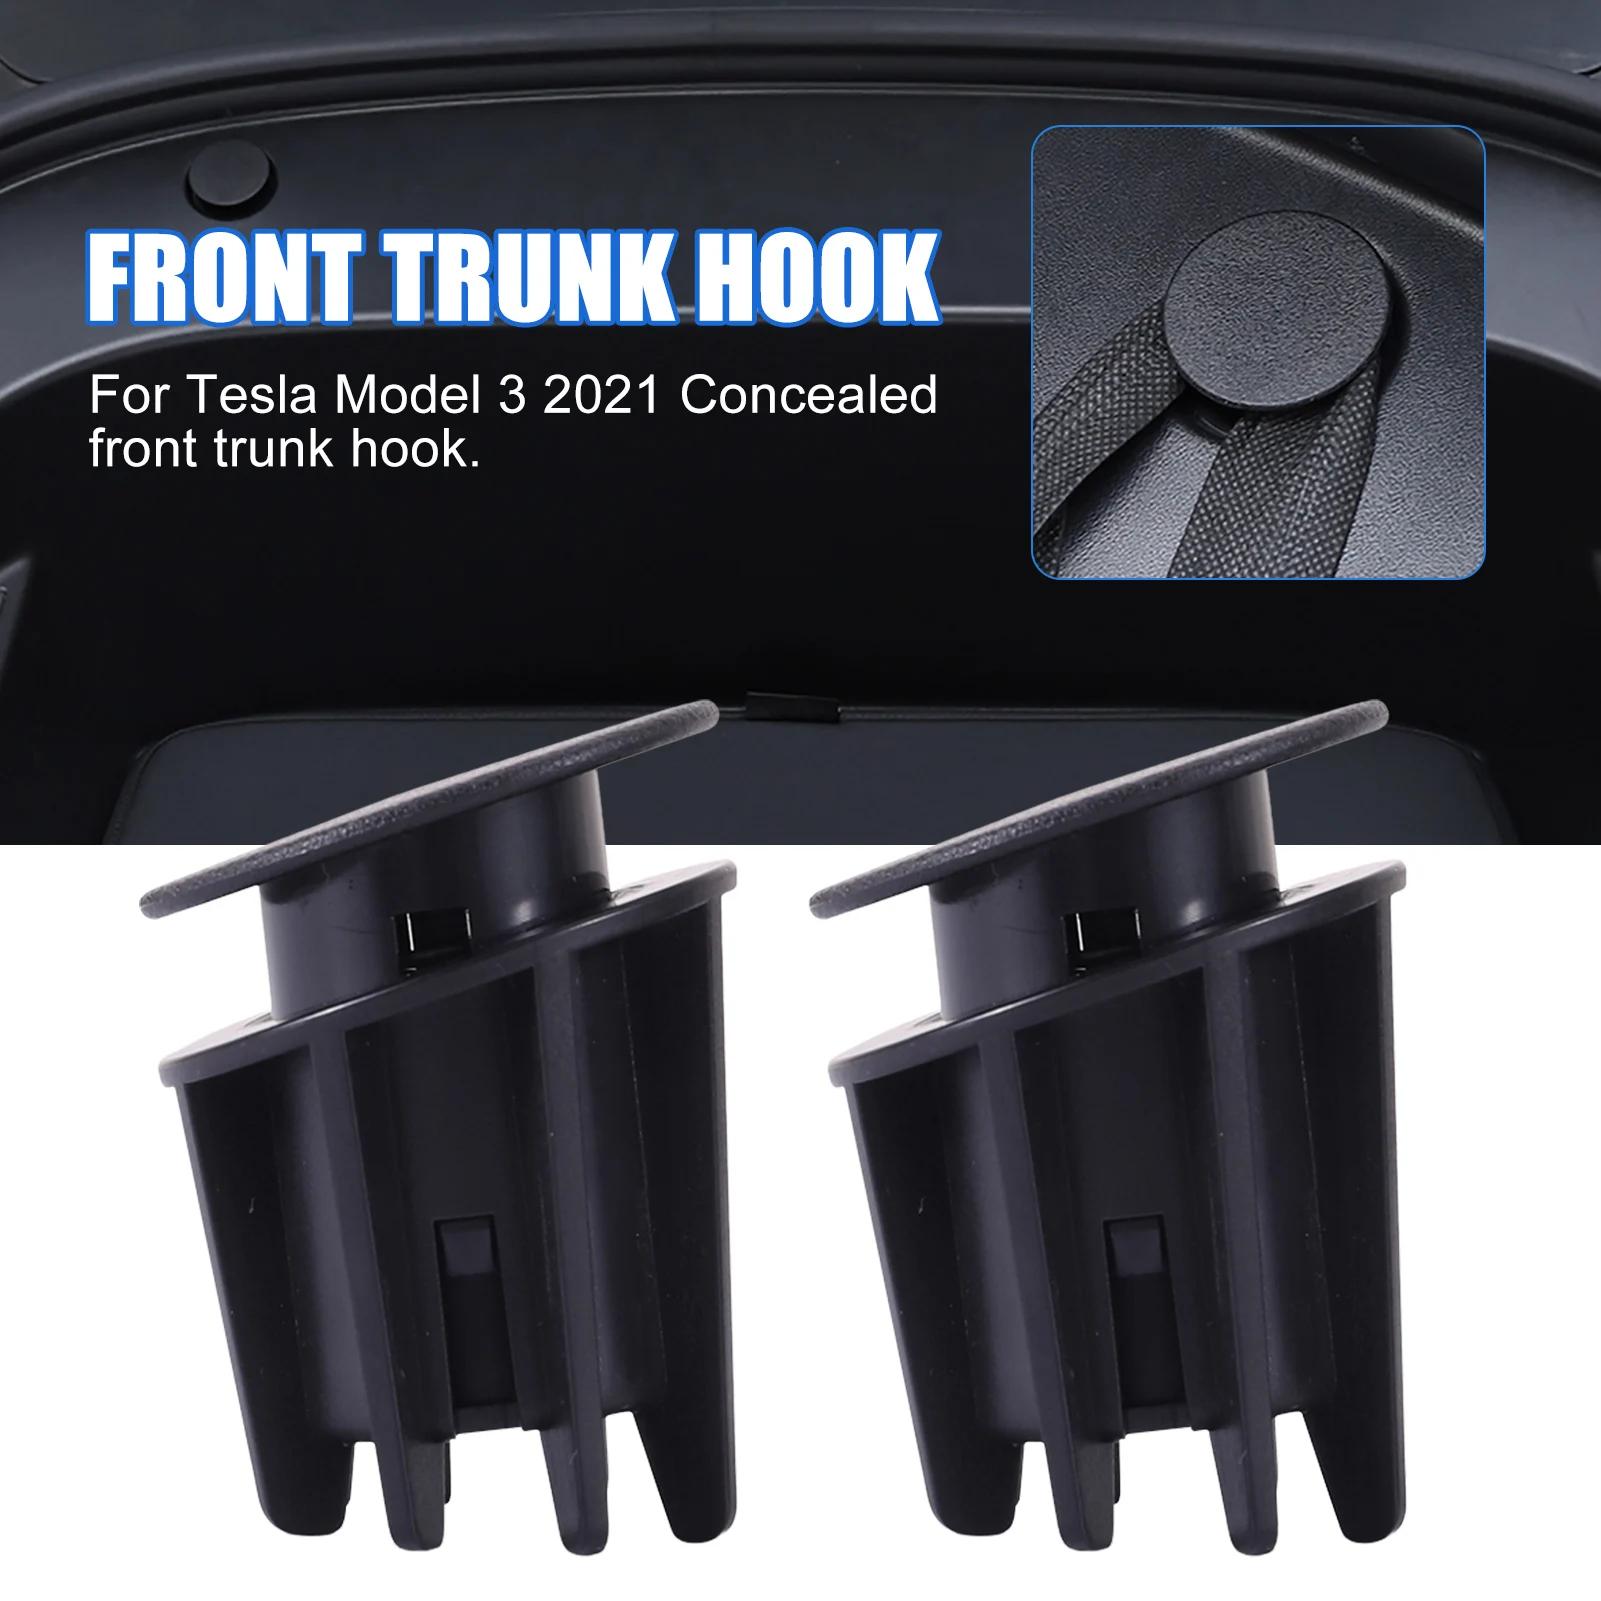 

2PCS Car Grocery Bag Hooks For Model 3 2021 ForTesla Front Trunk Hook Punch-free Hook Car Accessories Car Storage Hook